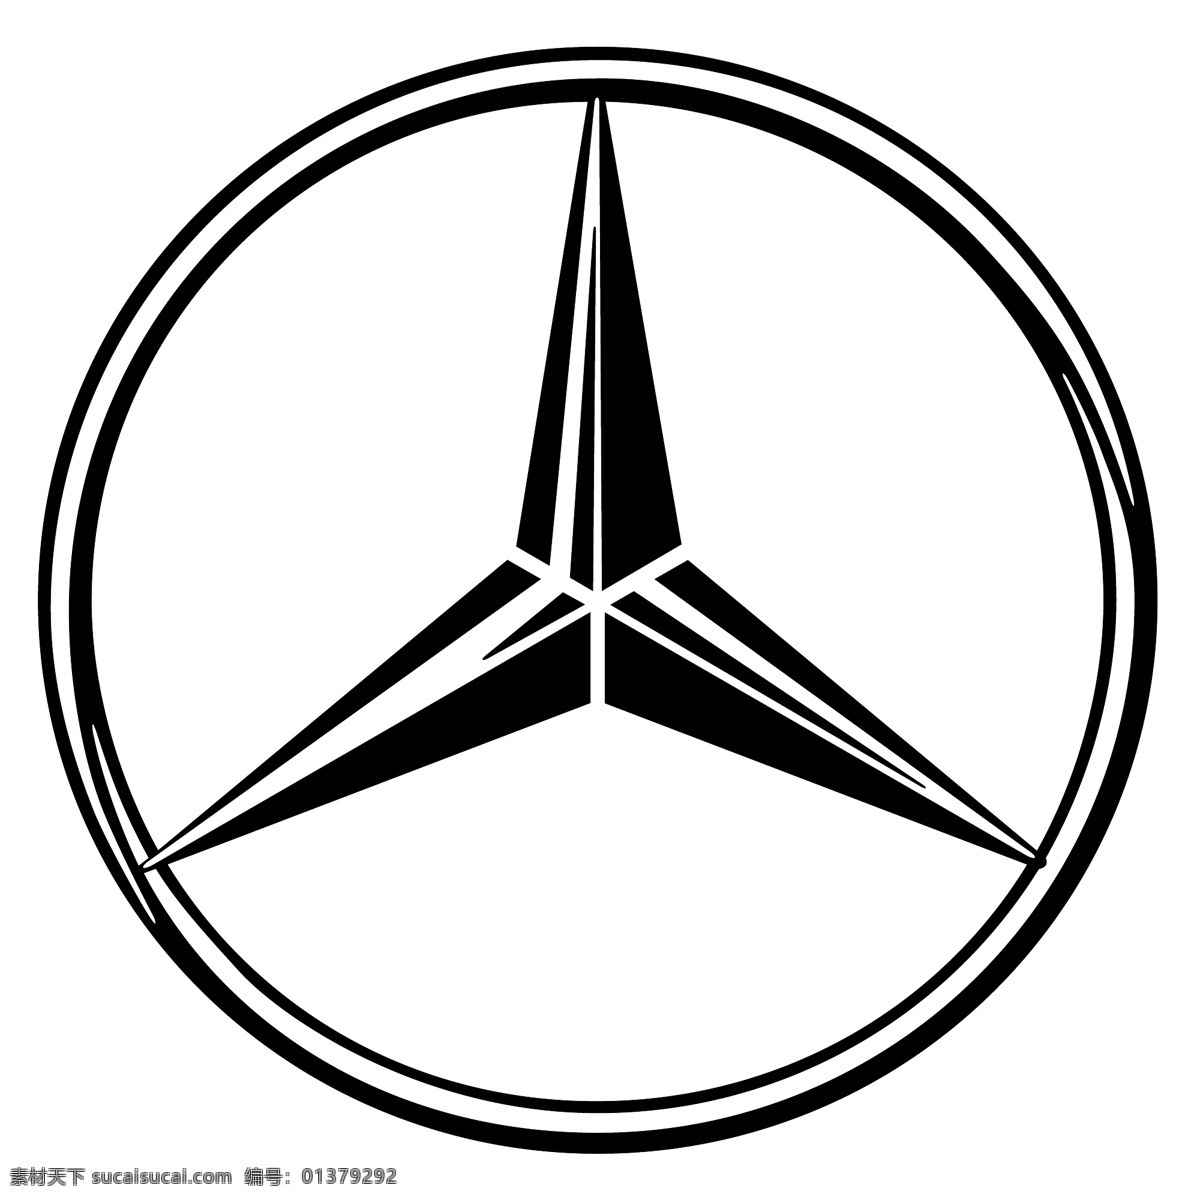 梅 赛 德斯 奔驰 标识 公司 免费 品牌 品牌标识 商标 矢量标志下载 免费矢量标识 矢量 psd源文件 logo设计